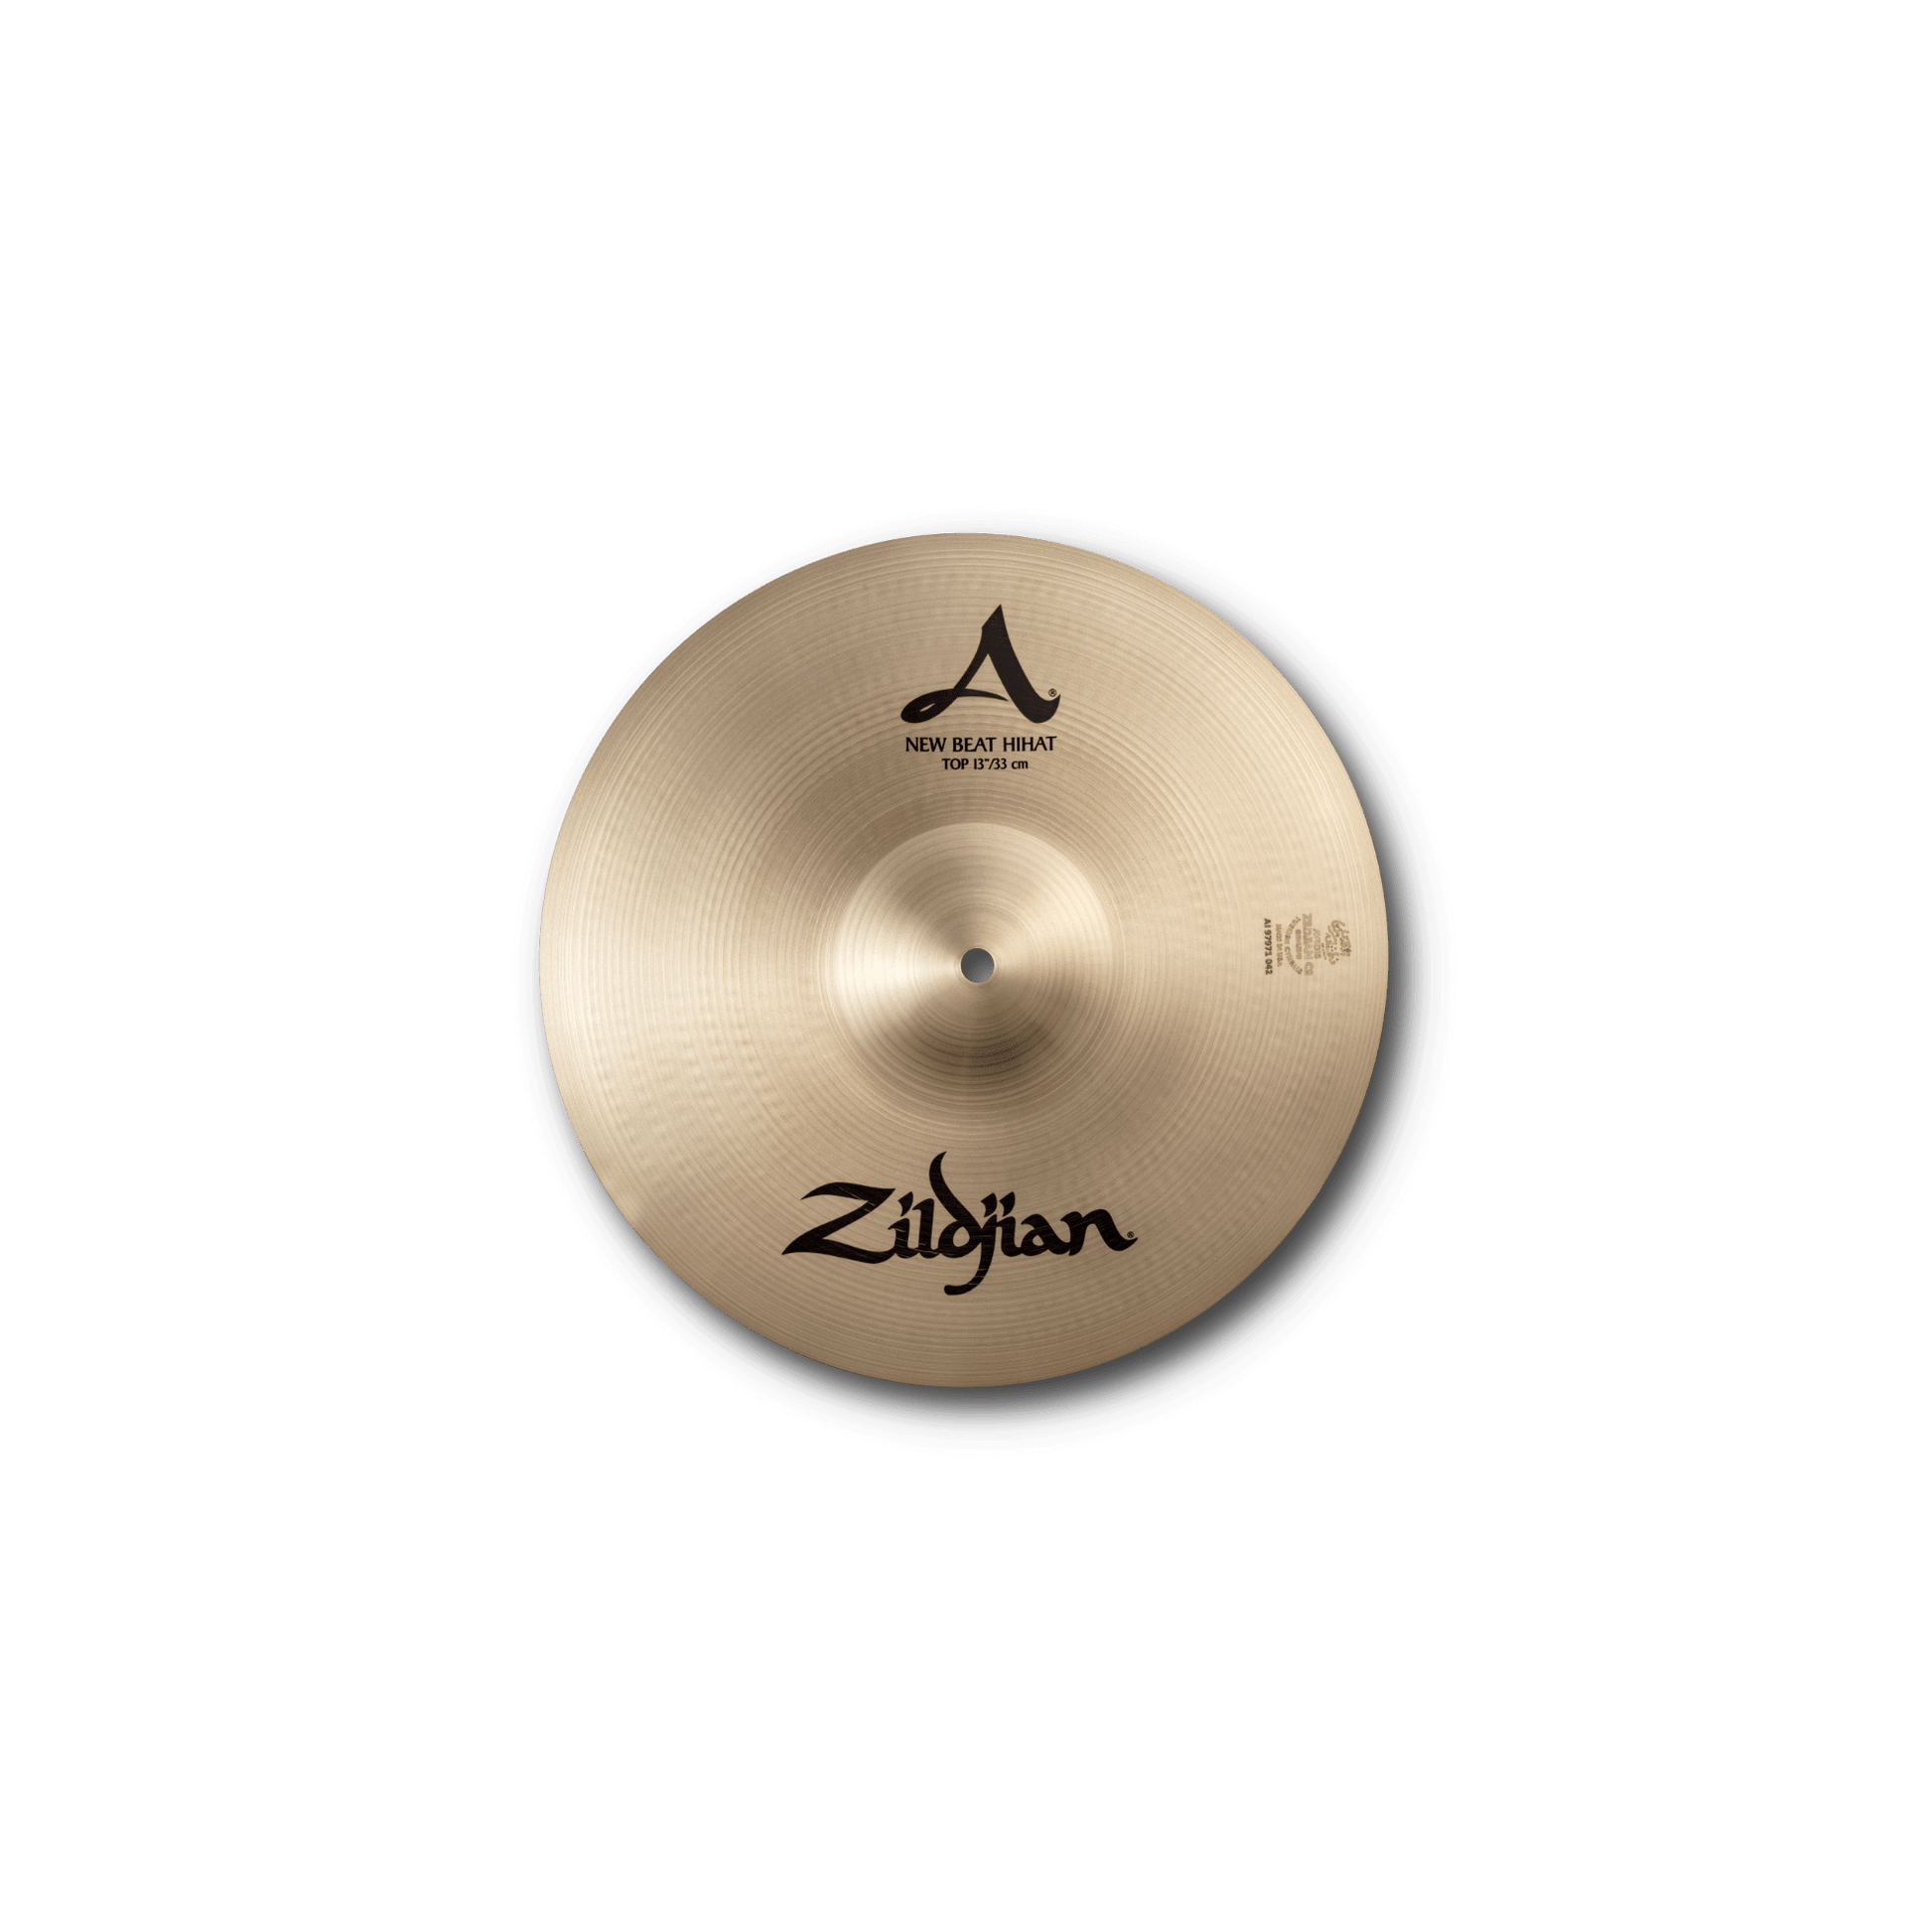 A Zildjian New Beat HiHats